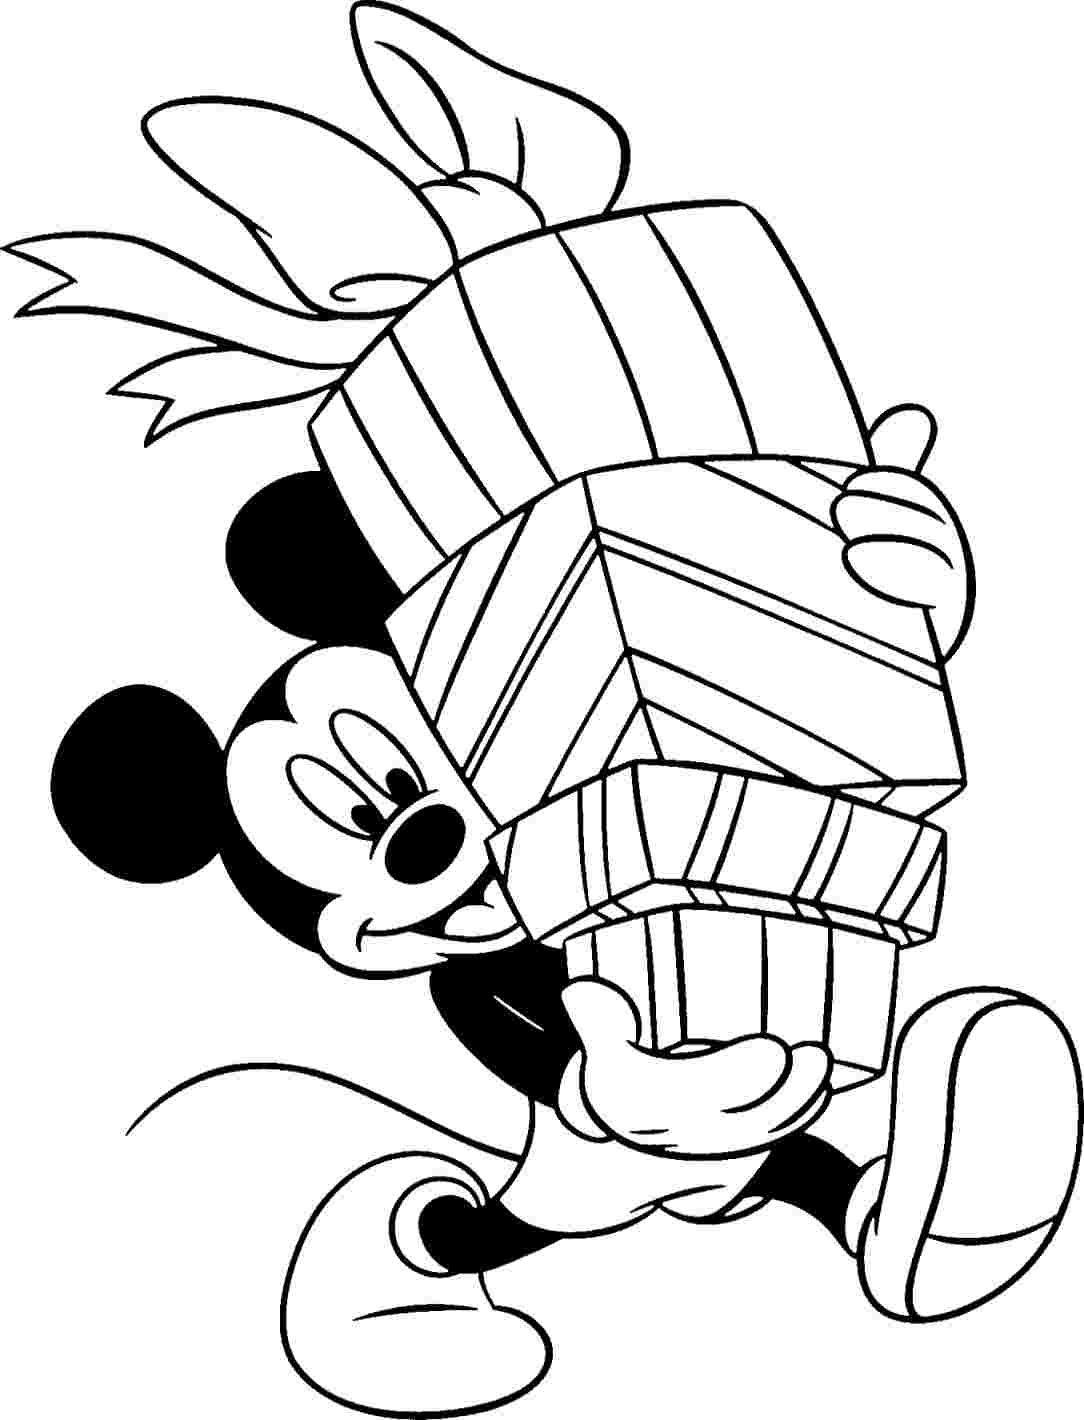 Tranh tô màu hình chuột mickey Tuyển tập những bức tranh tô màu chuột Mickey  dễ thương nhất HIỆN NAY - Tranh tô màu - DIỄN ĐÀN TÀI LIỆU - GIÁO ÁN